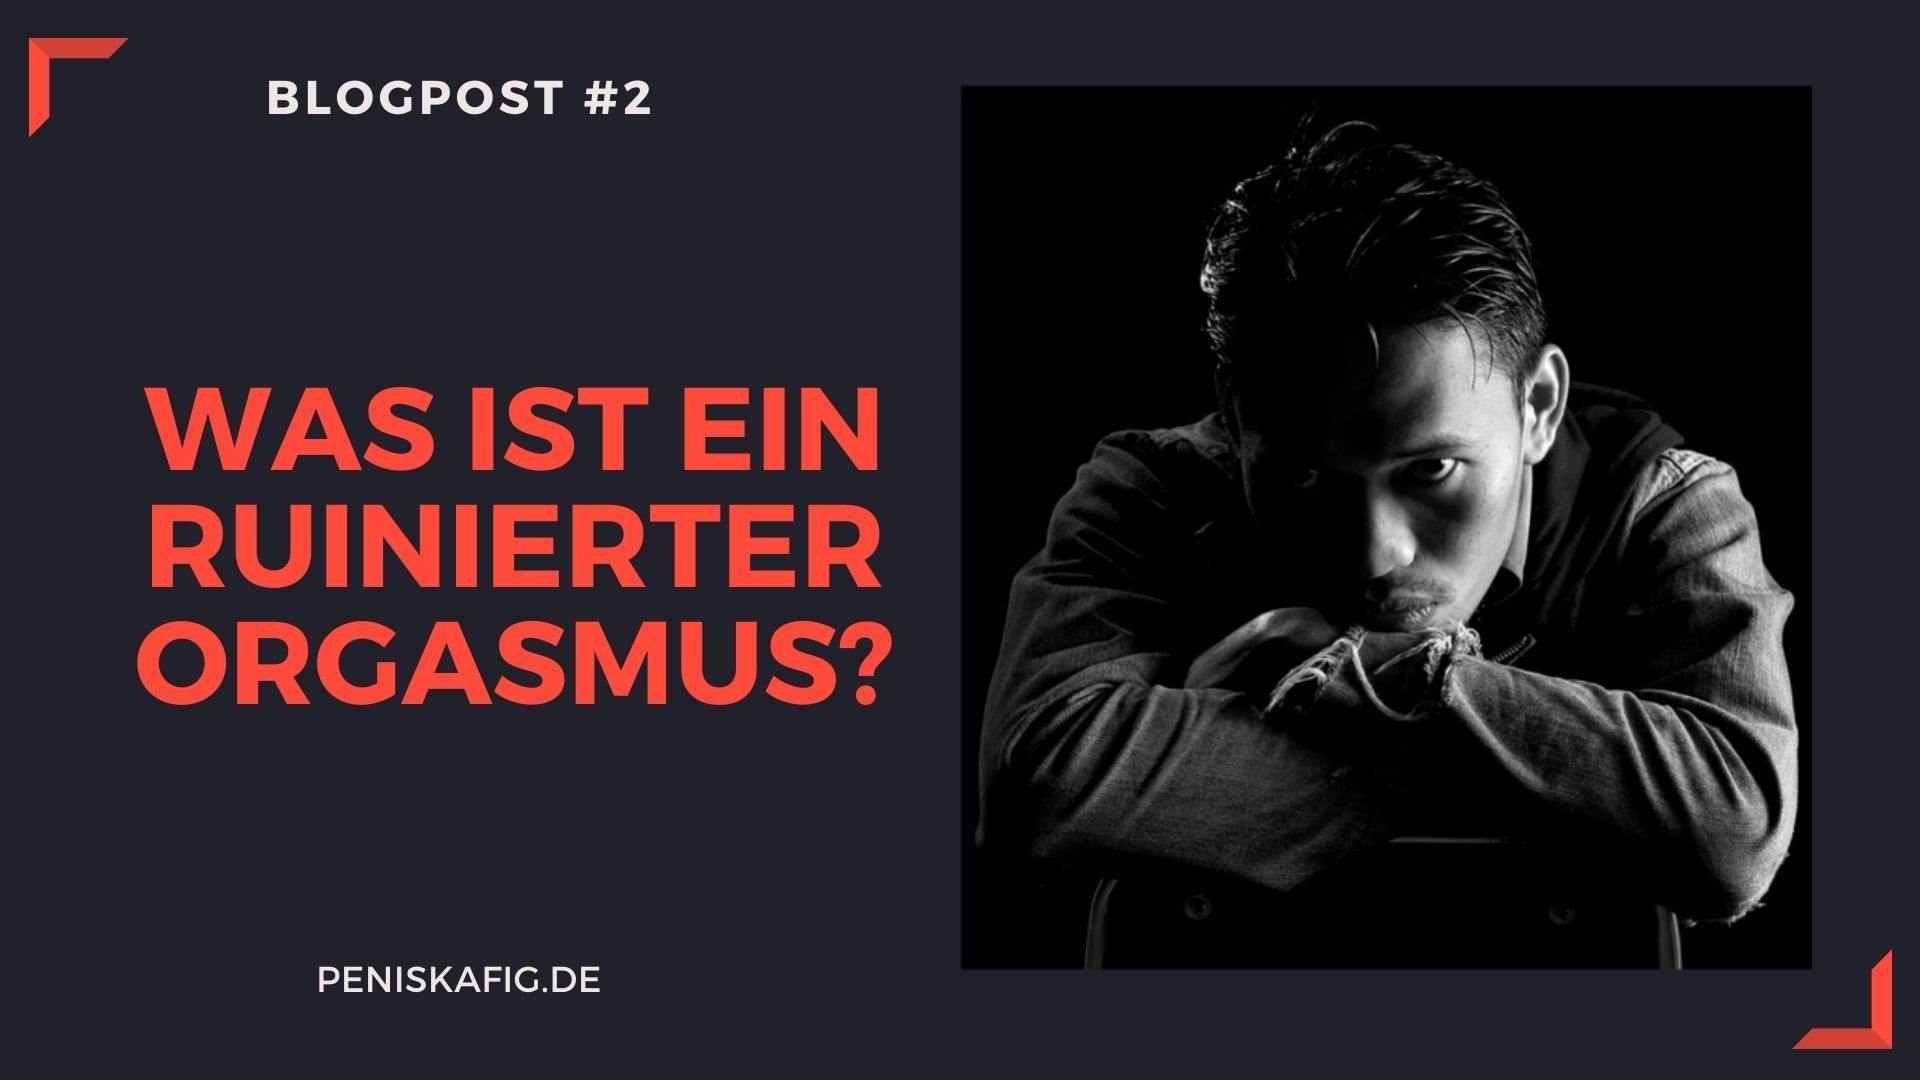 Was ist ein ruinierter Orgasmus? - Peniskäfig.de